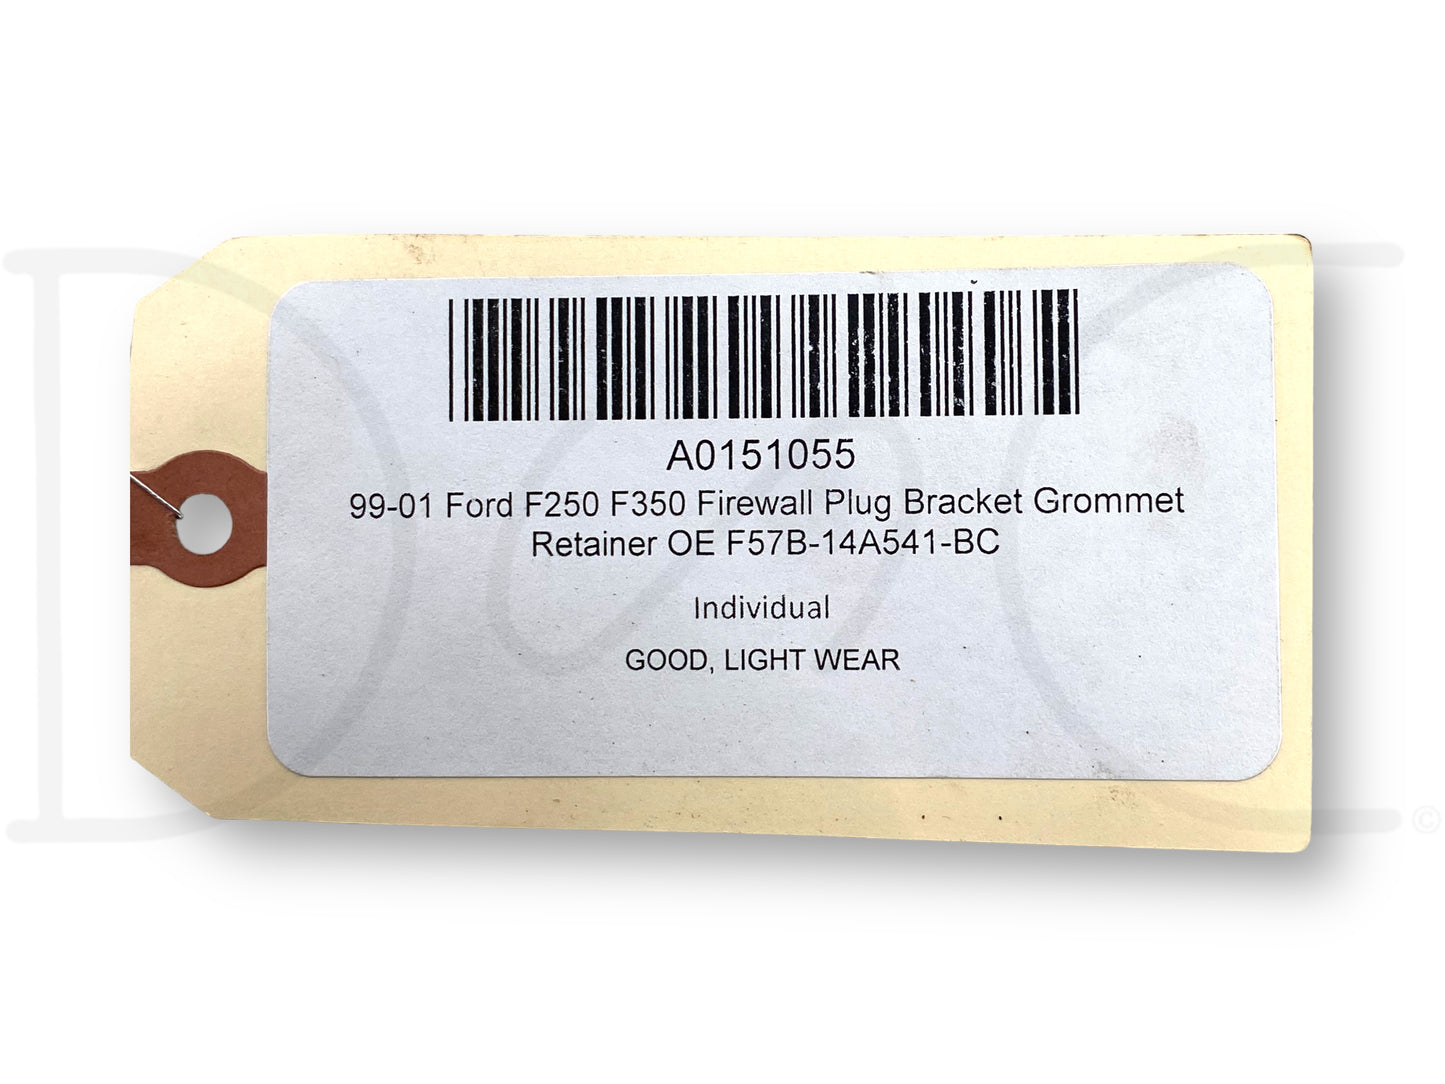 99-01 Ford F250 F350 Firewall Plug Bracket GroMMet Retainer OE F57B-14A541-Bc